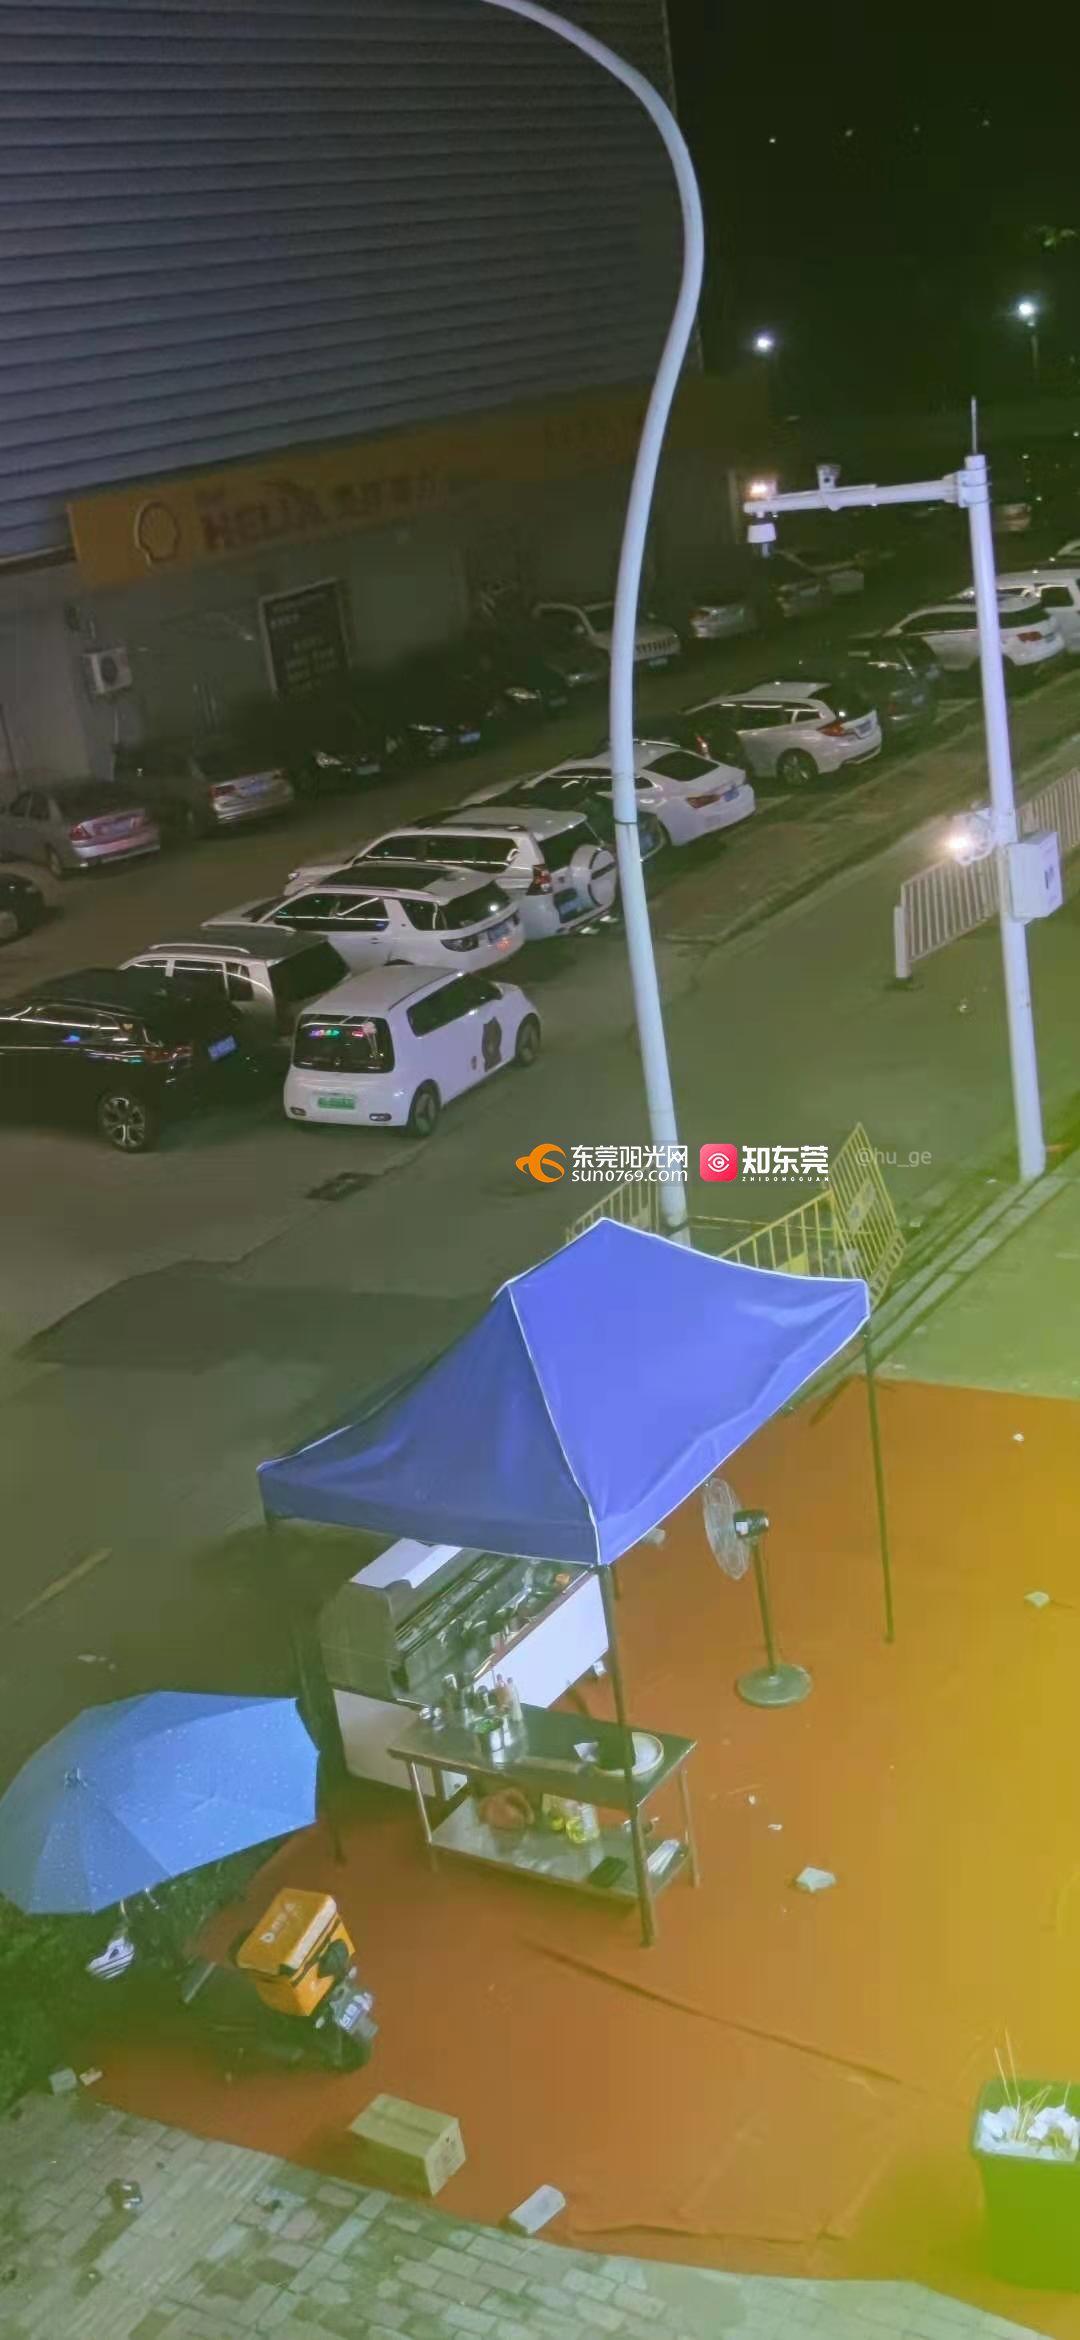 11月12日凌晨,重庆某小区楼下,在烧烤摊的女子及同行人员因为太吵闹